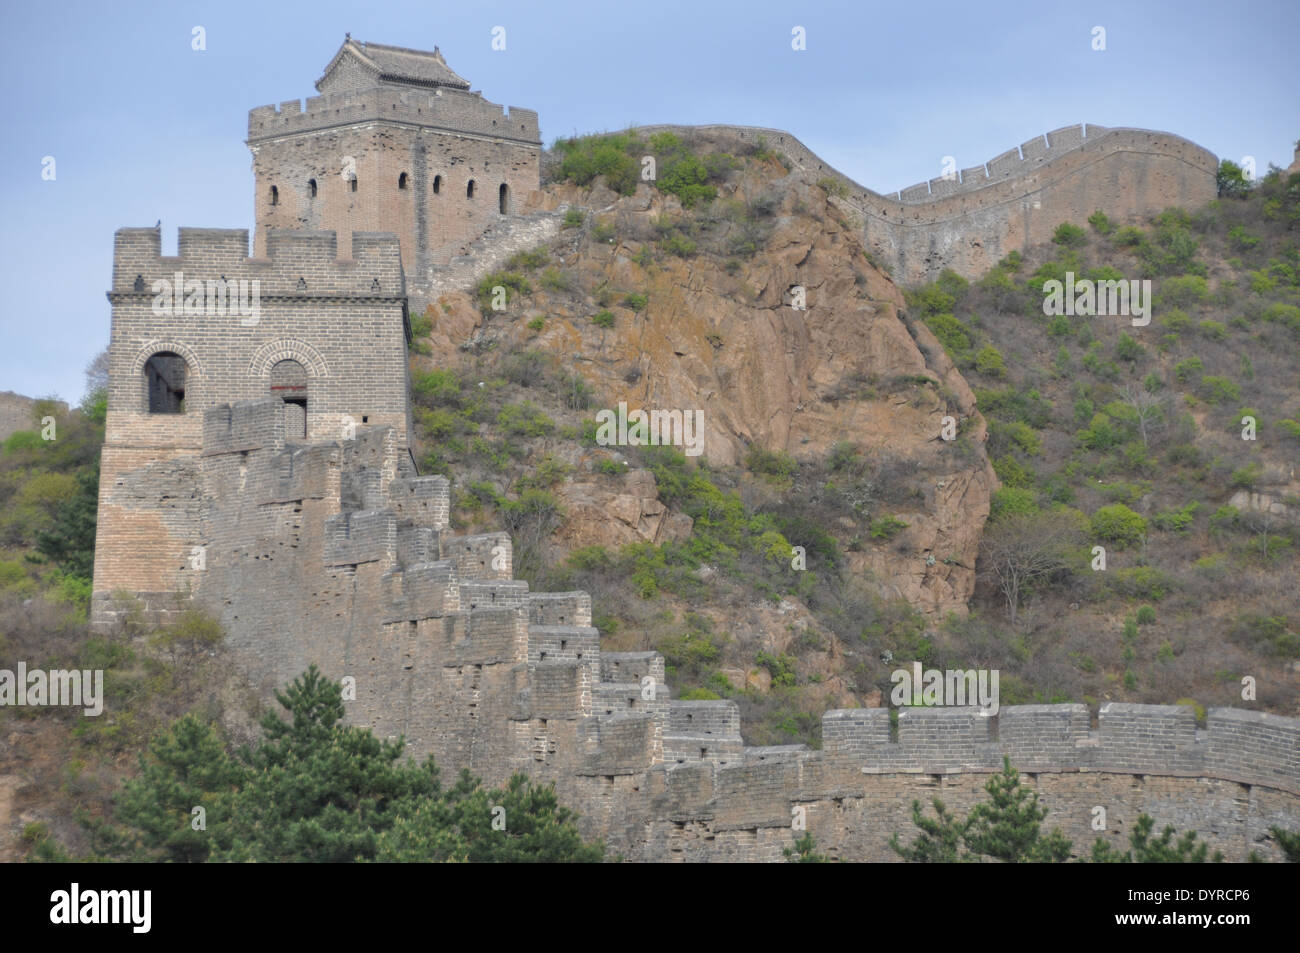 The Great Wall of China at Jinshanling, Chengde, Hebei, China Stock Photo